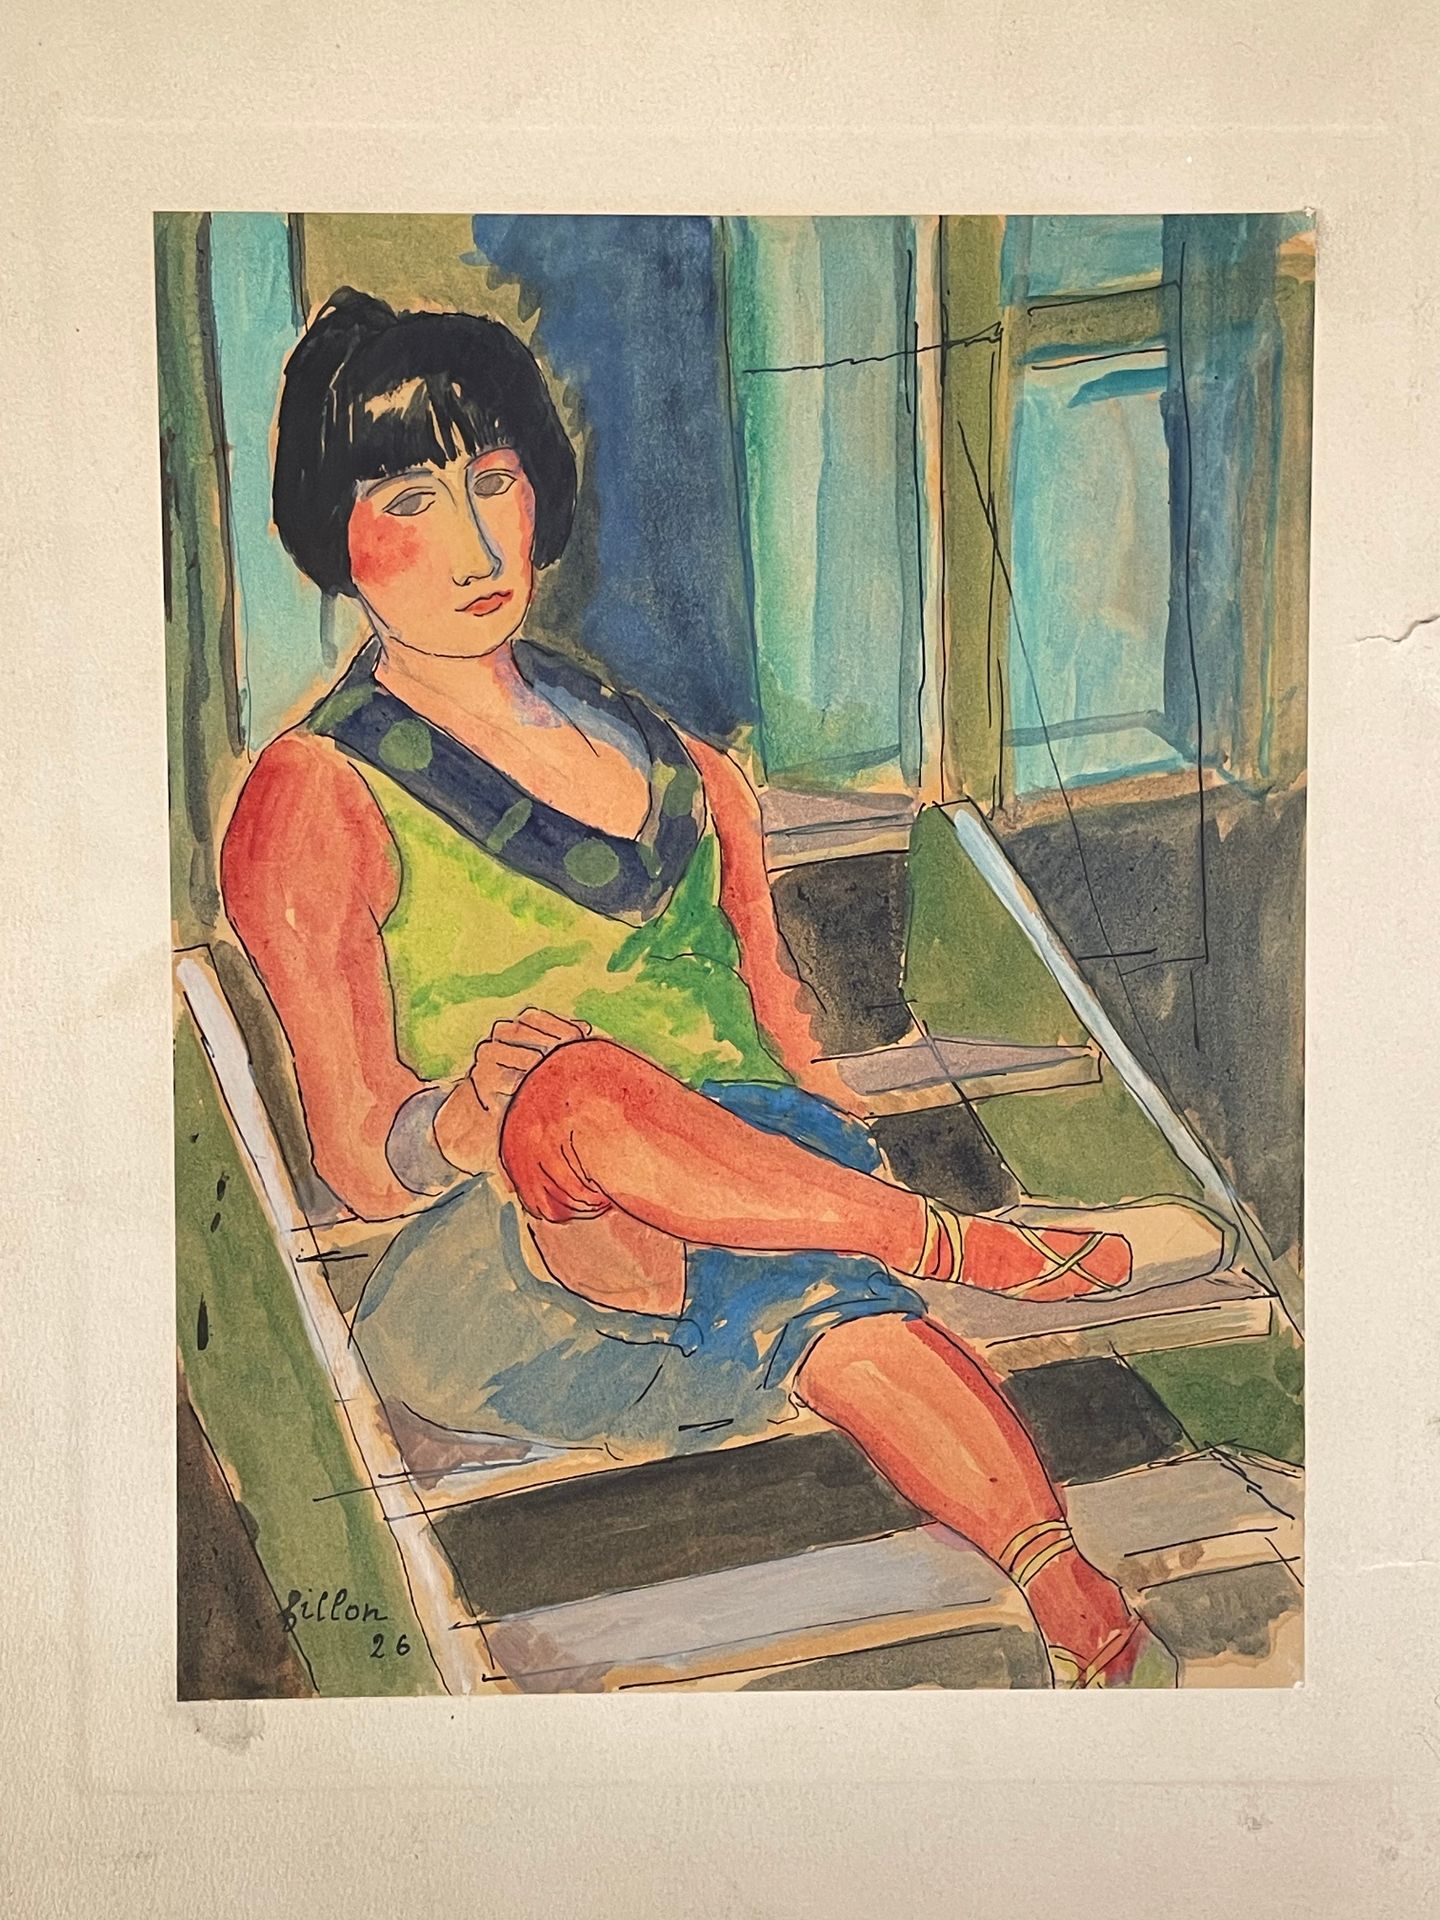 Null 阿瑟-菲永（1900-1974）
坐在楼梯上的女人
纸上水彩画，粘贴在卡片上，左下方有签名和 1926 年的日期
26.5 x 20.5 厘米
支架上&hellip;